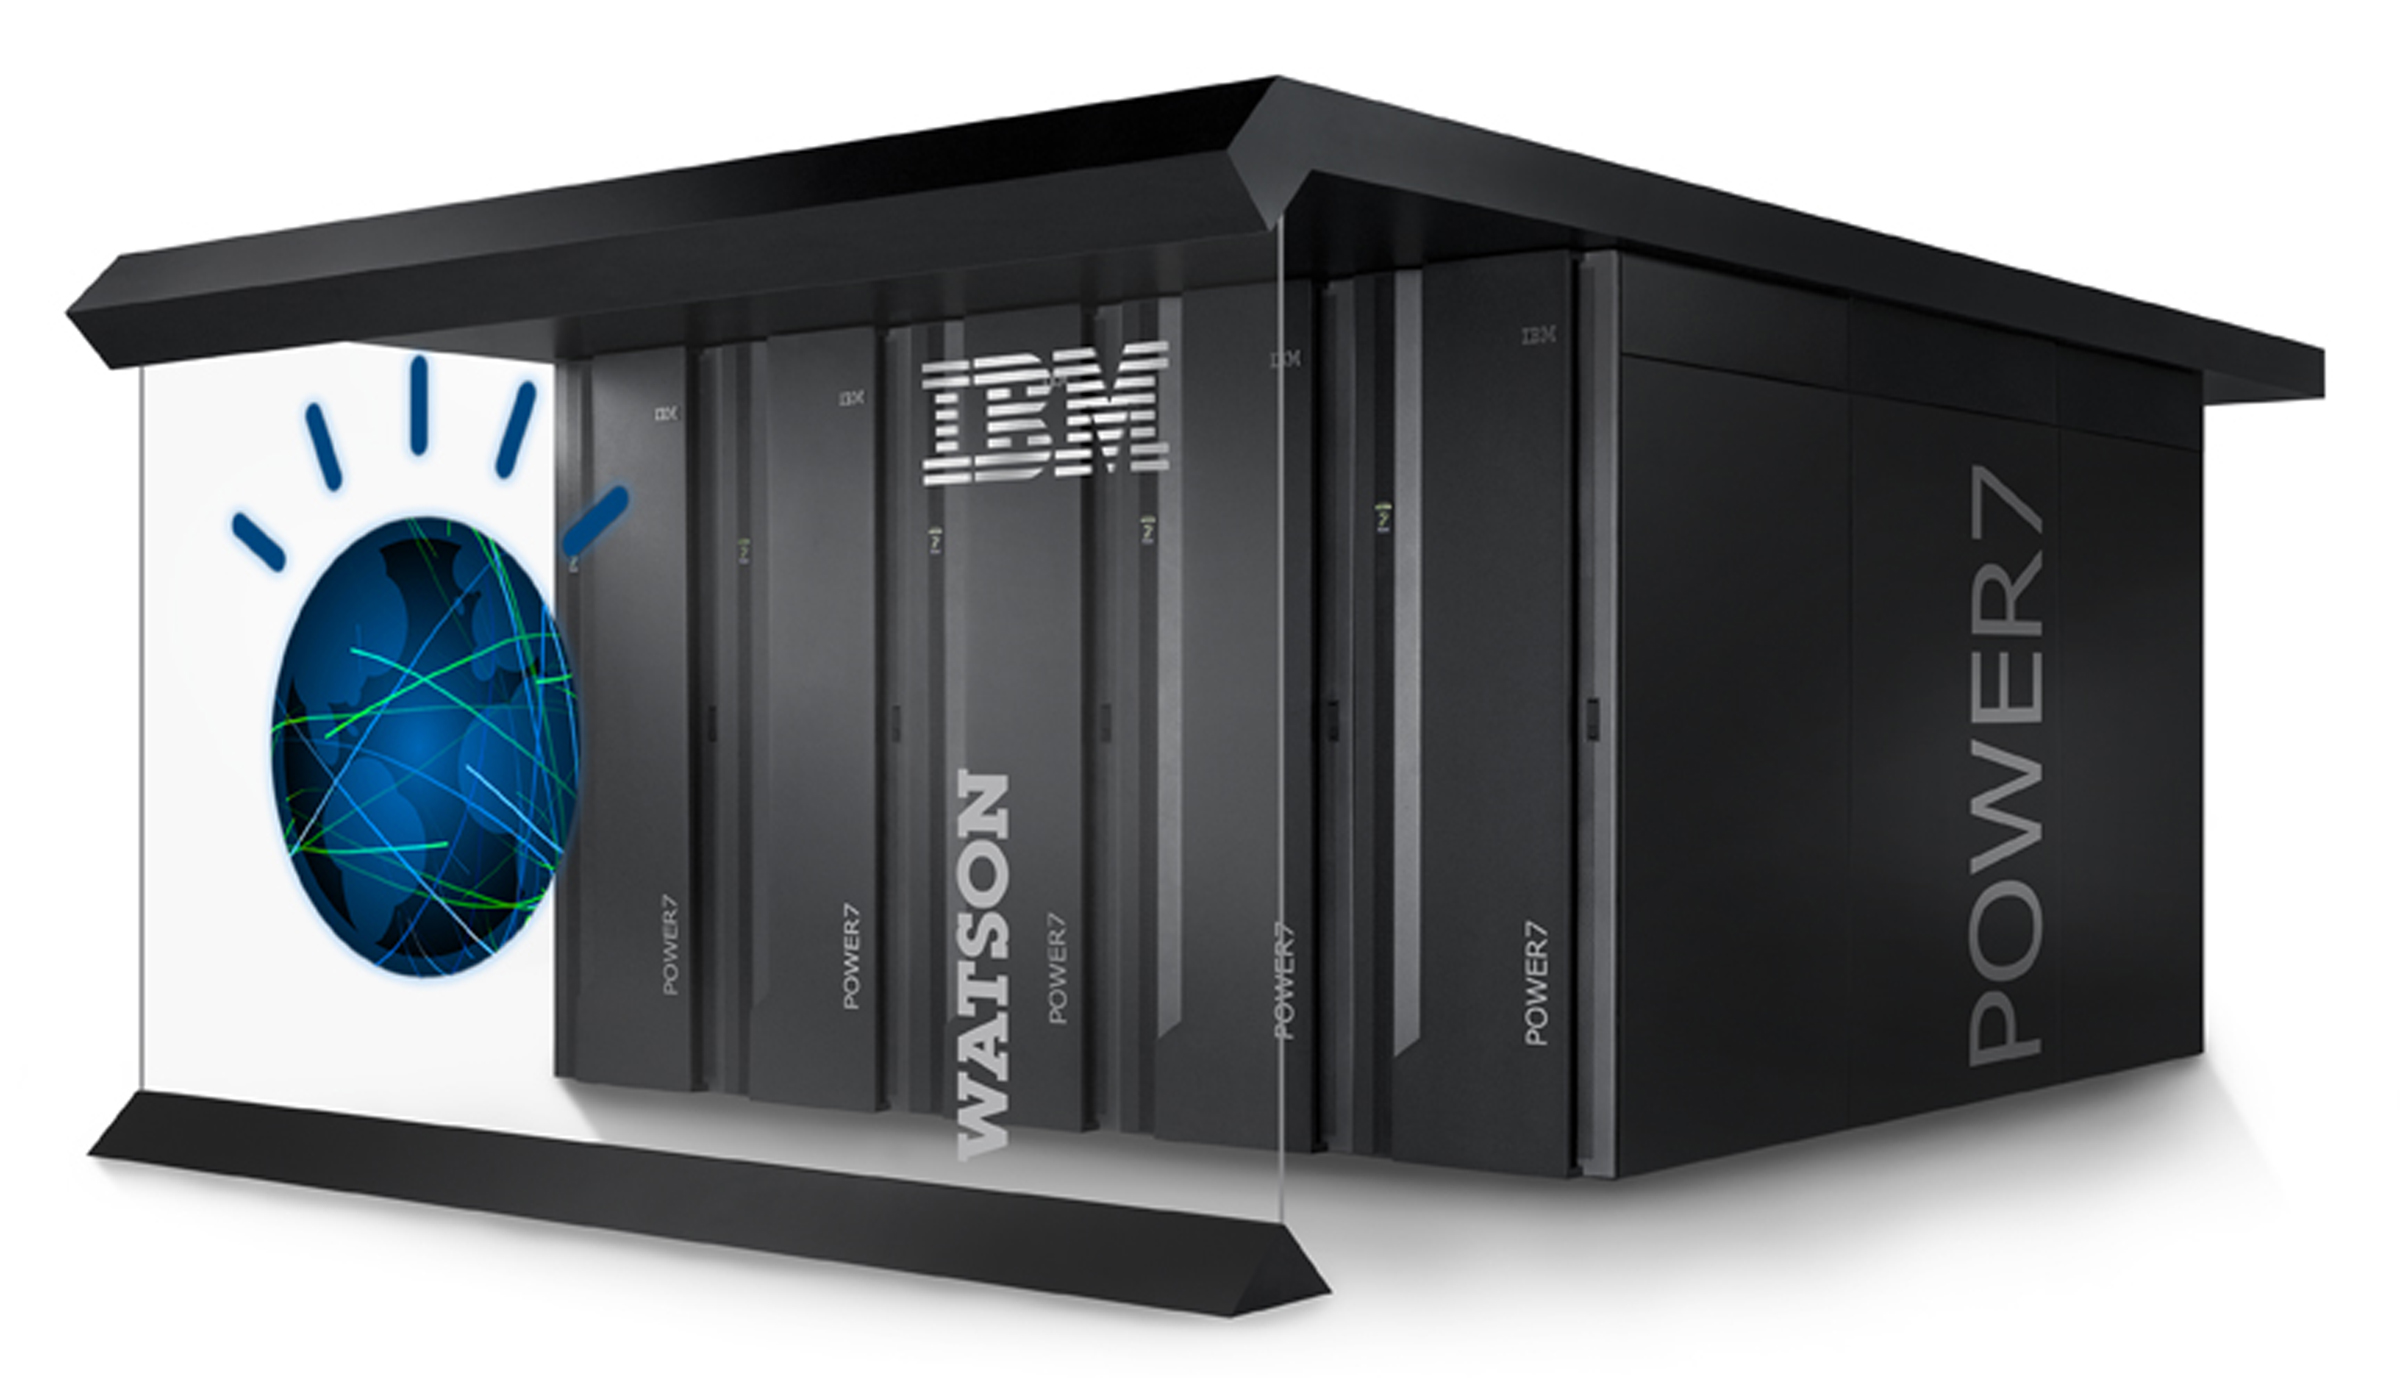 IBM invertirá 600 millones de euros para comercializar soluciones de inteligencia artificial basadas en el súper ordenador Watson